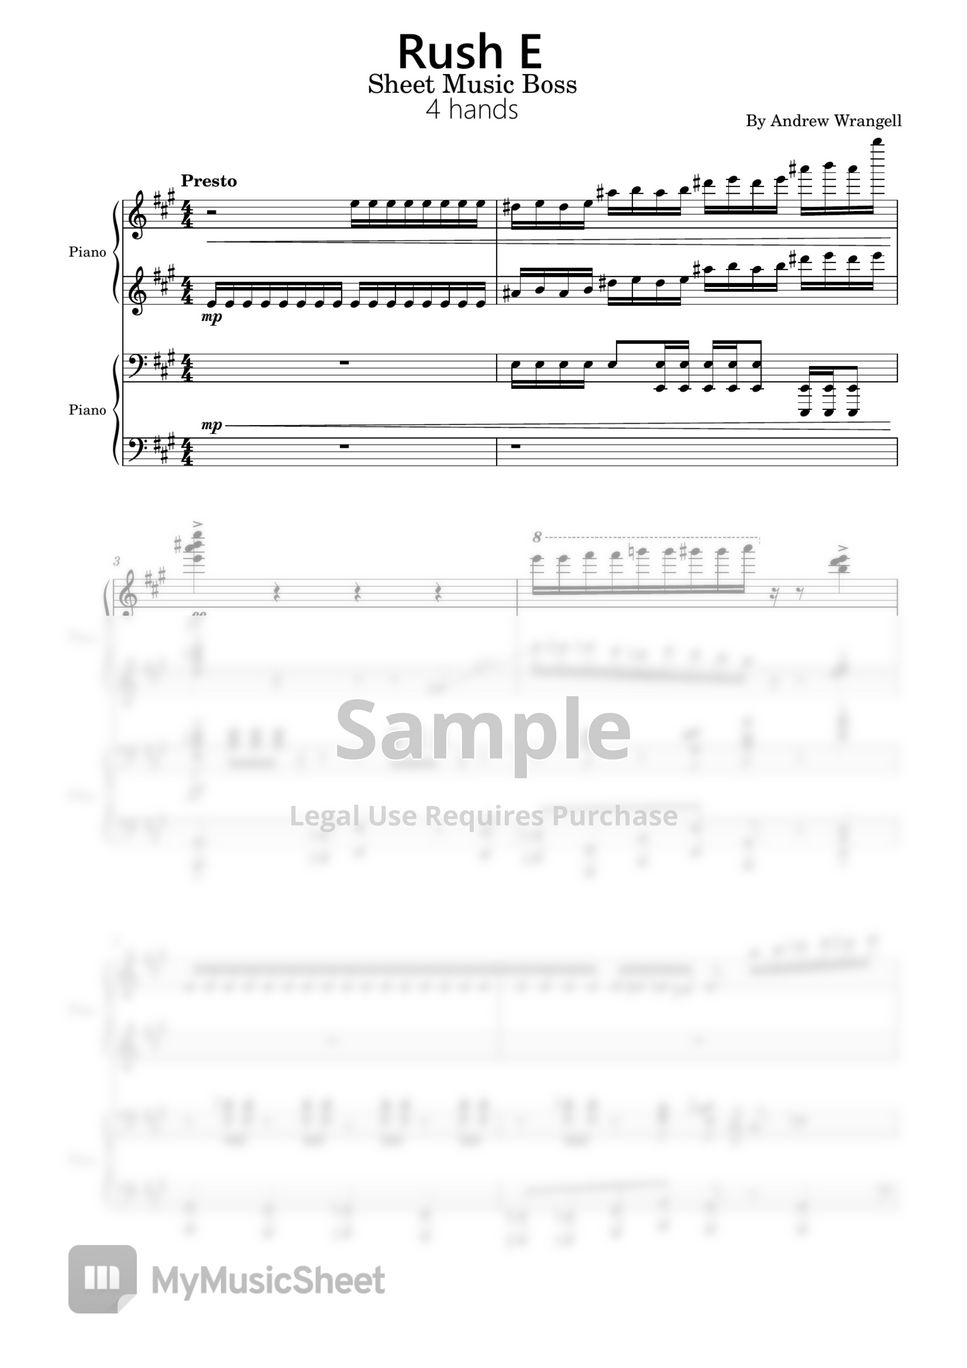 Andrew Wrangell - Rush E (Rush E ,4 hands,Piano Sheet,Andrew Wrangell,Sheet Music Boss) by poon